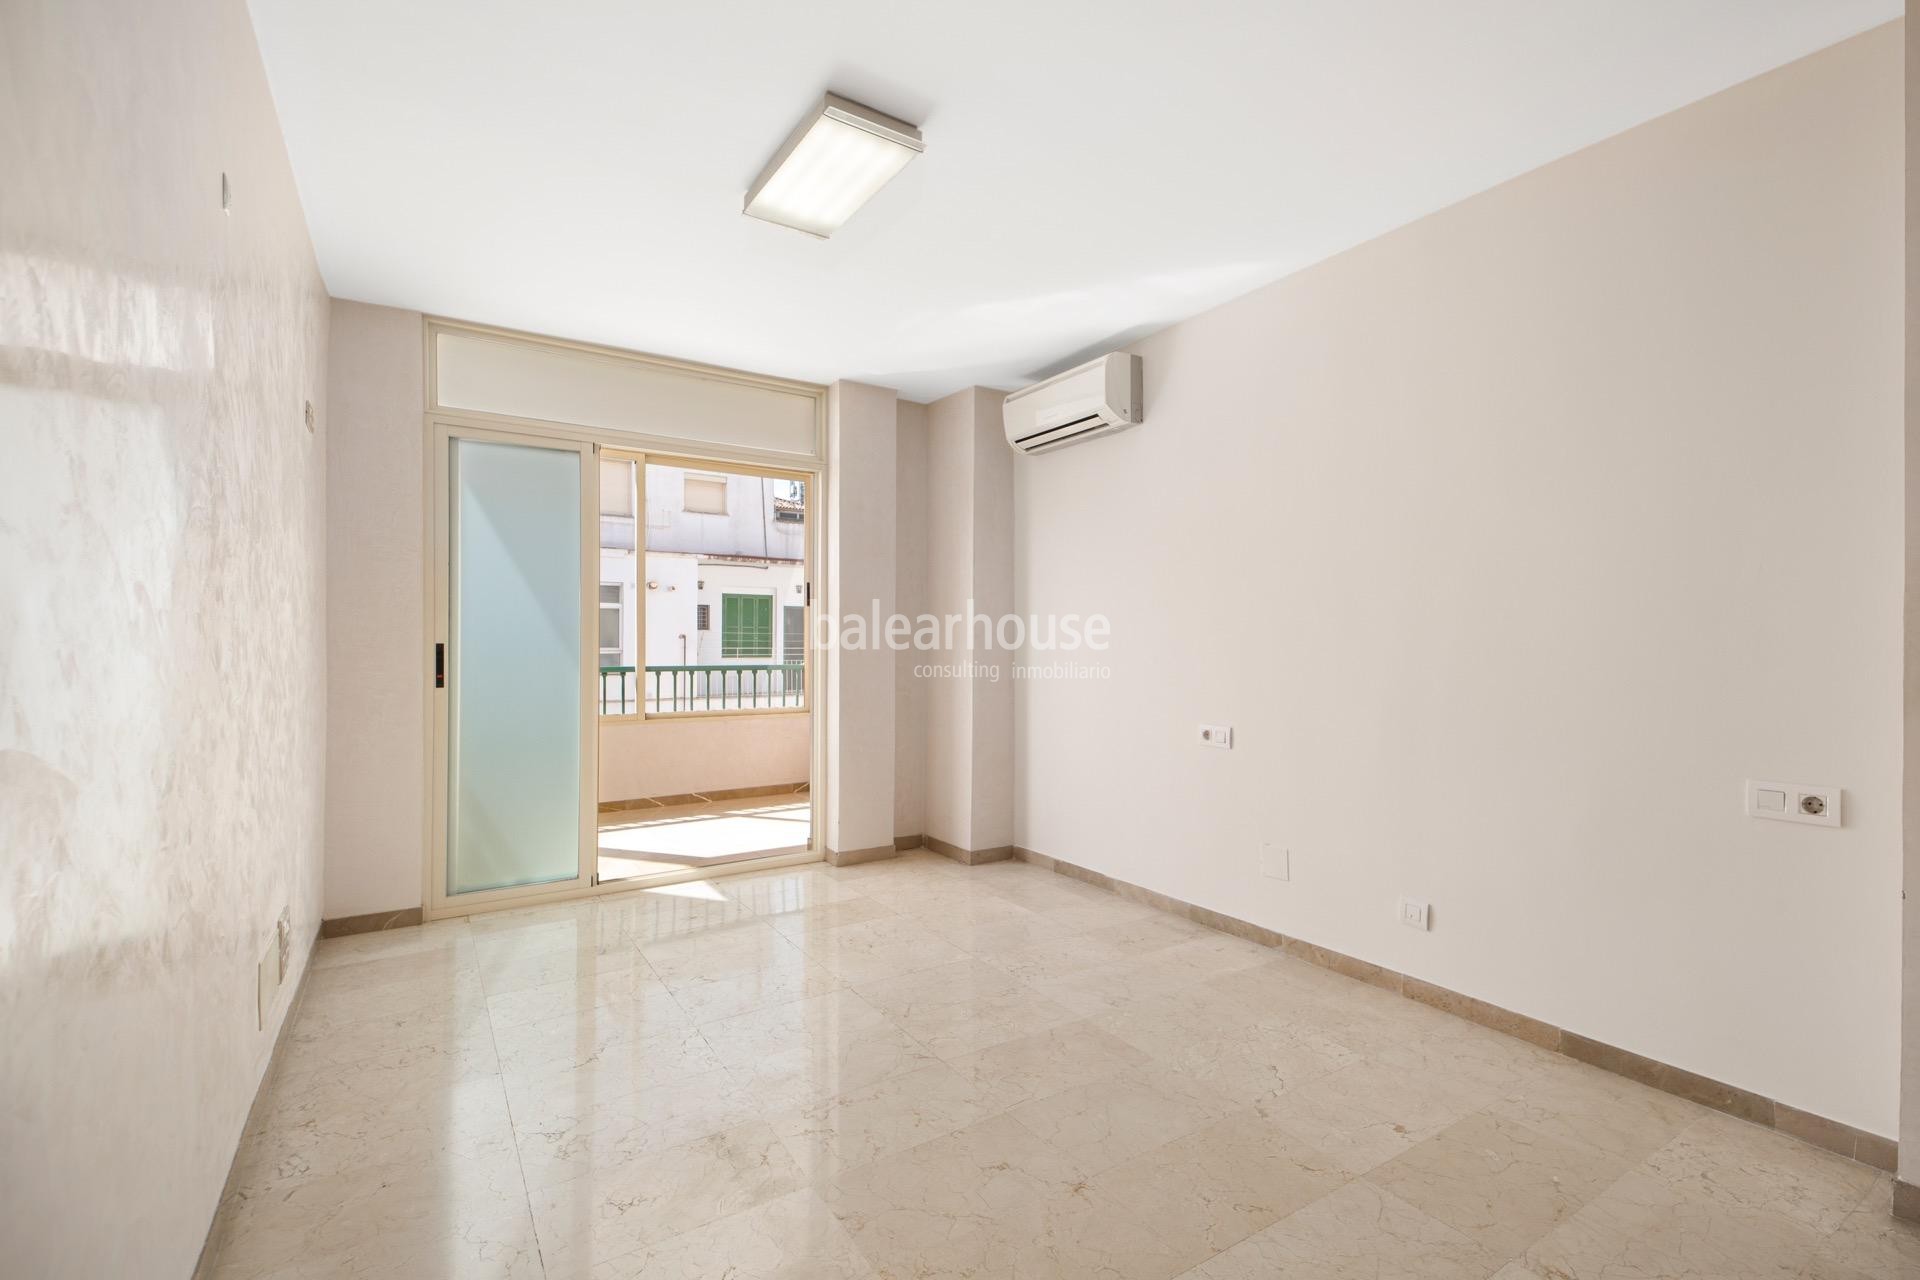 Excelente y luminoso piso de grandes dimensiones ubicado en la zona centro de Palma.